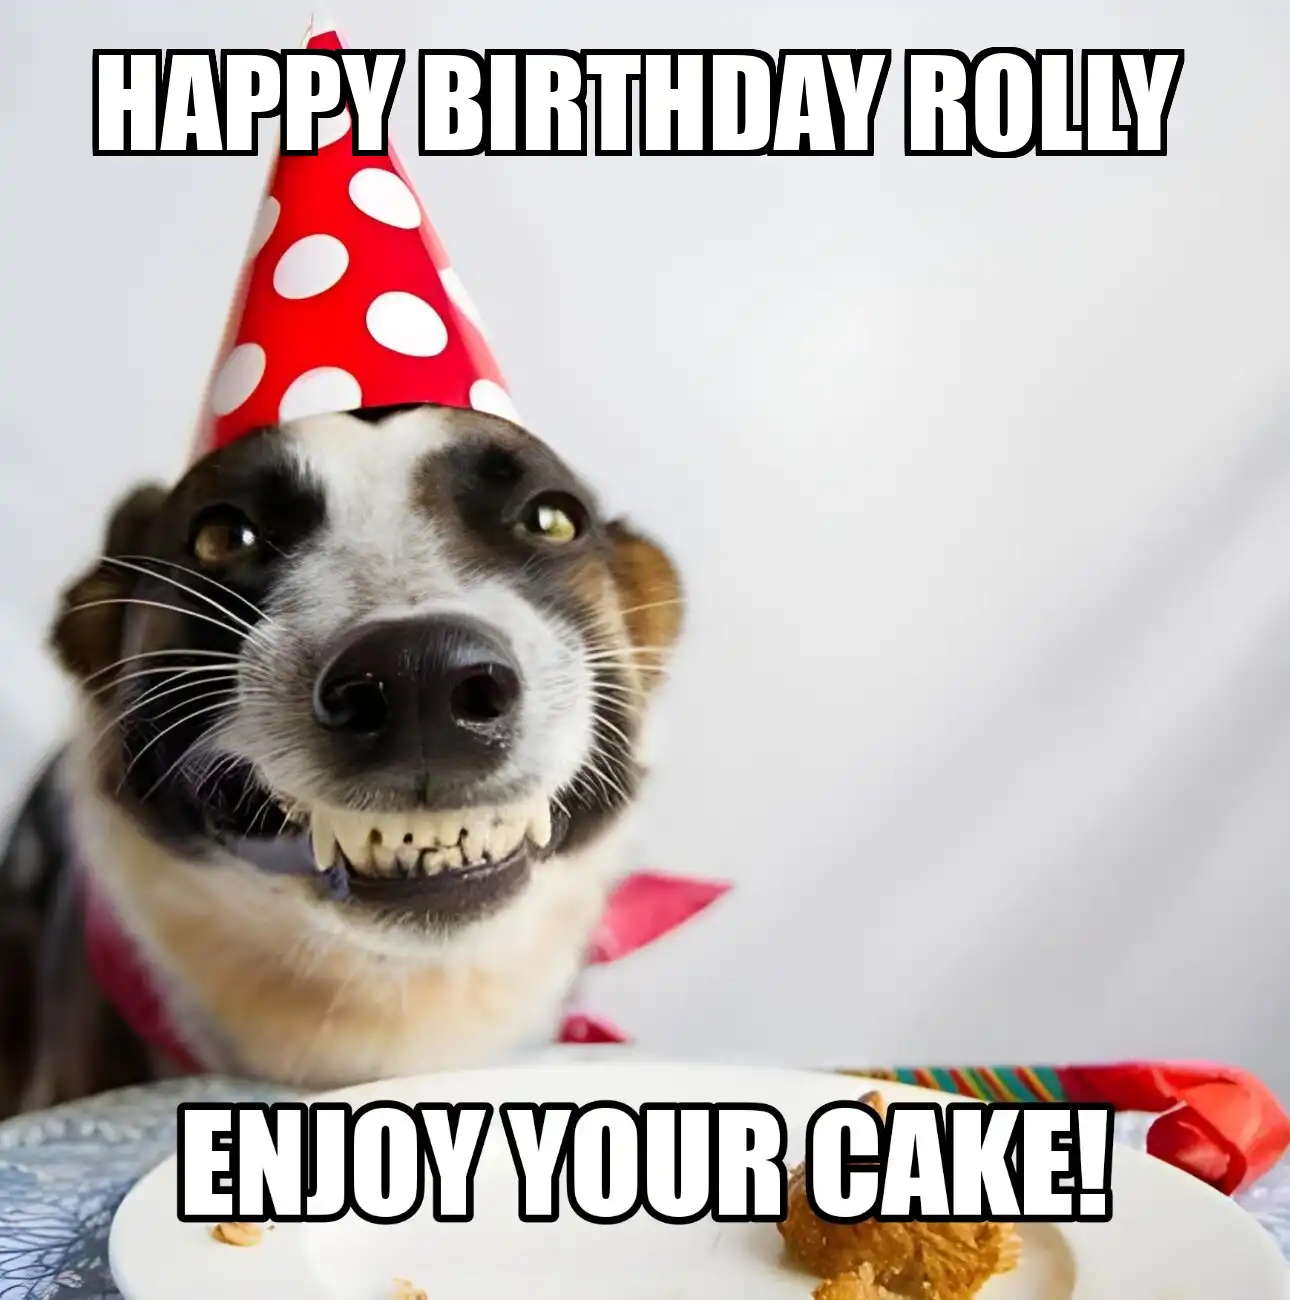 Happy Birthday Rolly Enjoy Your Cake Dog Meme